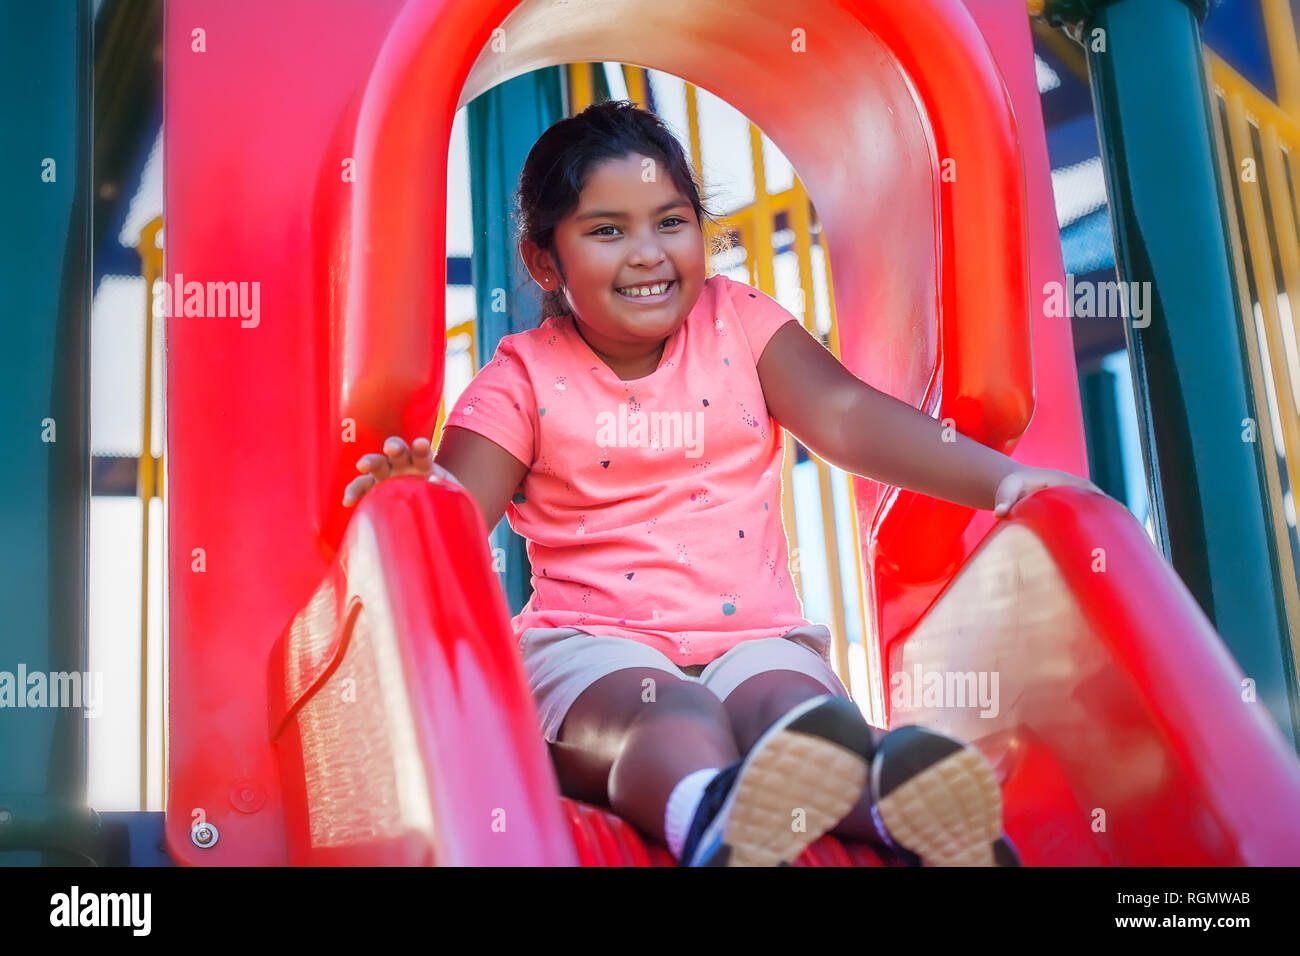 Une jolie jeune fille hispanique avec un sourire mignon a l'air détendu alors qu'elle s'apprête à glisser le long d'une aire de glisse. Banque D'Images